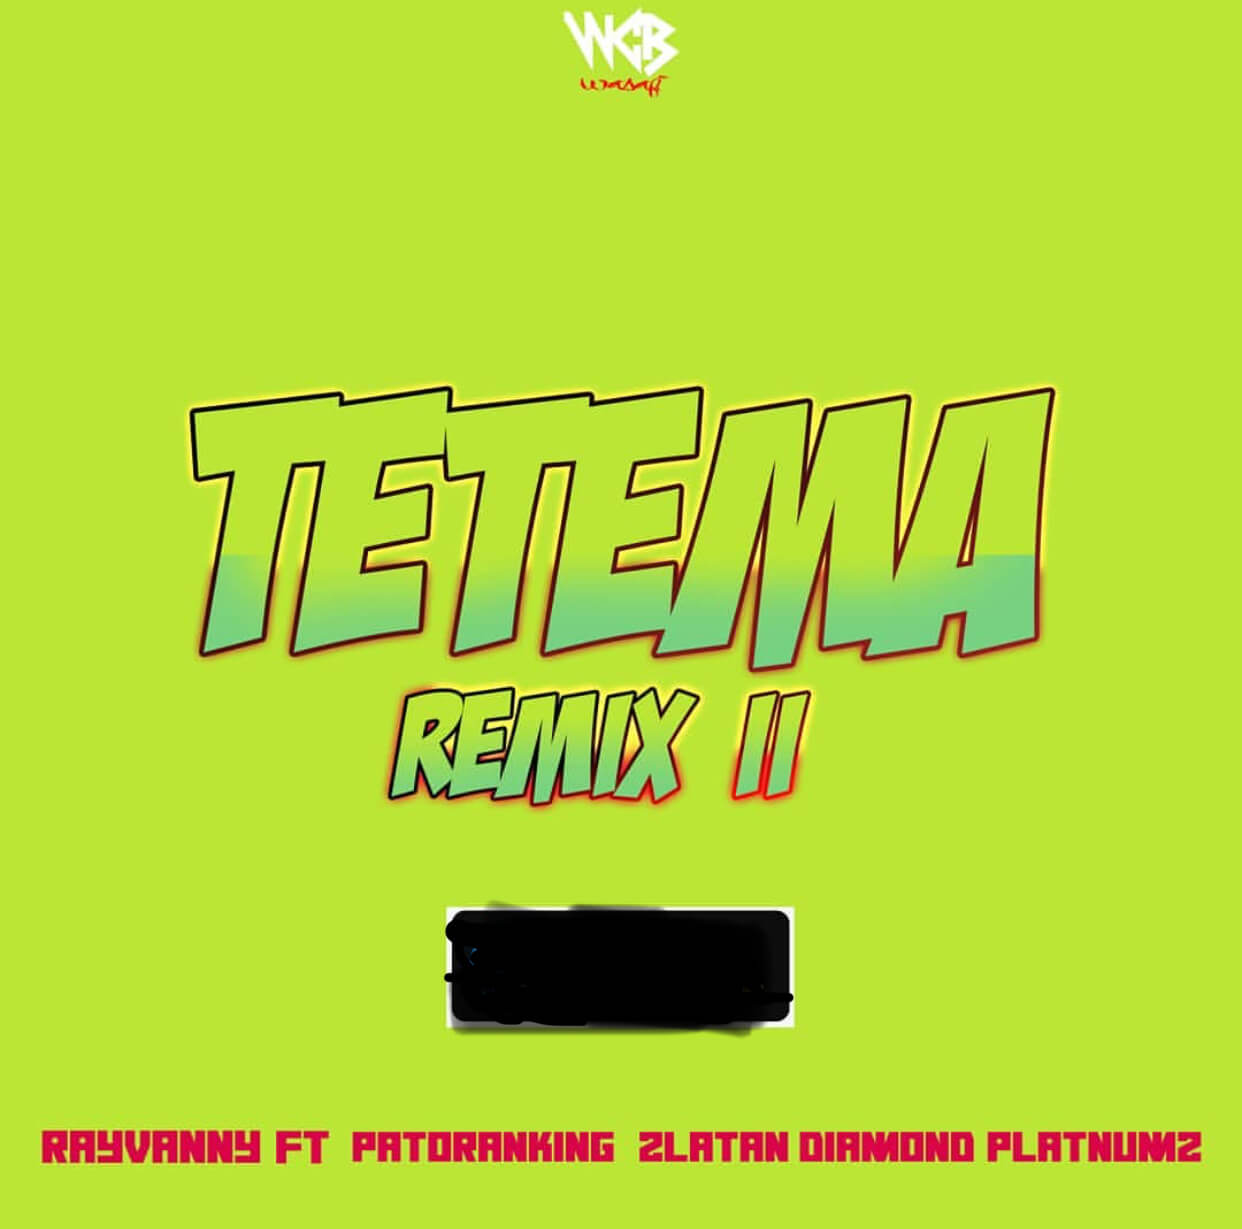 Video: Rayvanny – Tetema (Remix 2) ft. Patoranking, Zlatan & Diamond Platnumz